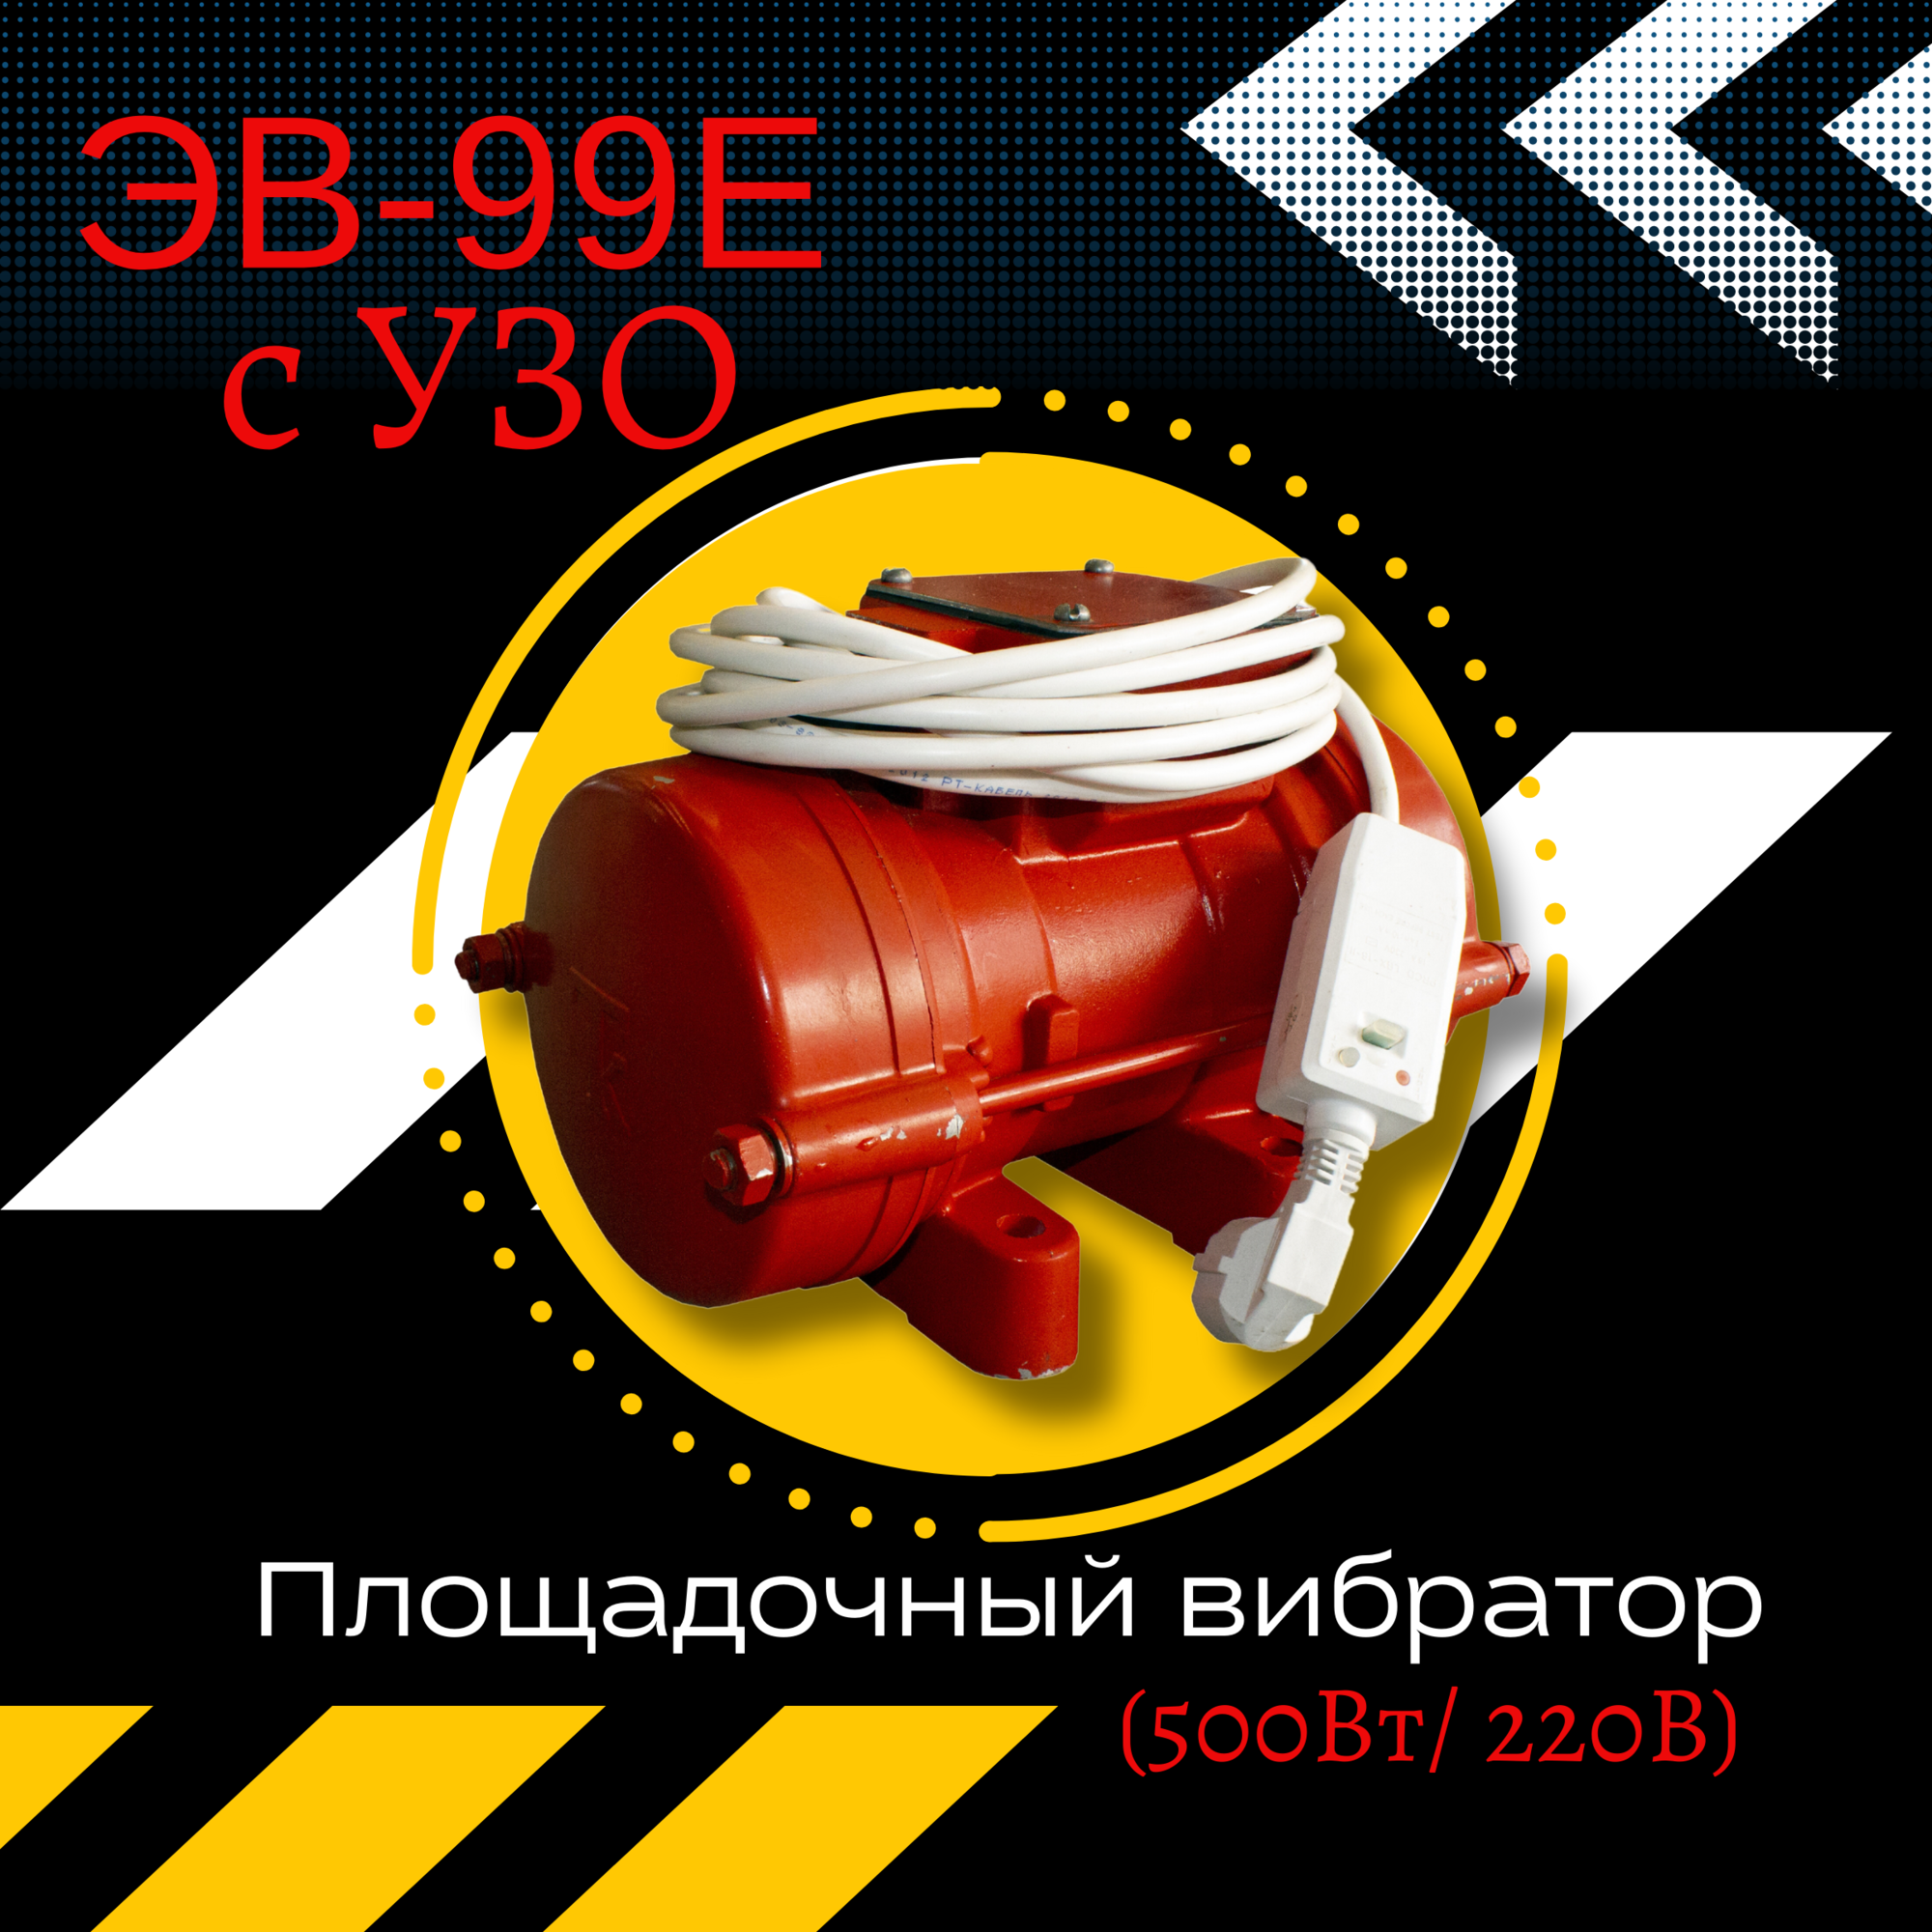 Площадочный вибратор TeaM ЭВ-99Е с УЗО (500Вт/ 220В)